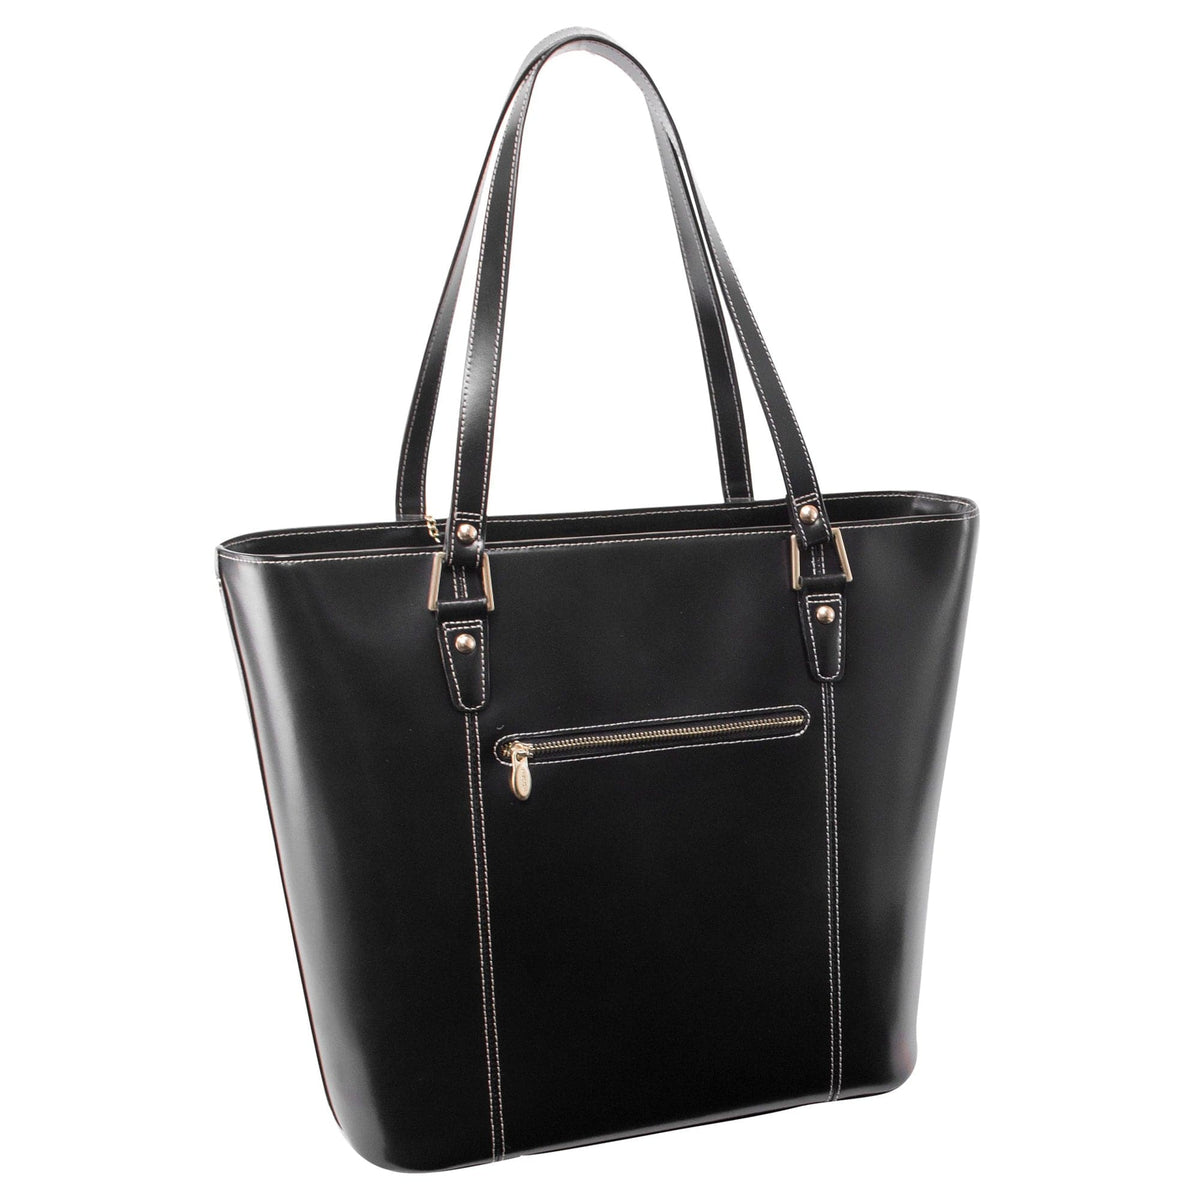 McKlein USA Deva Leather Tote Bag with Tablet Pocket